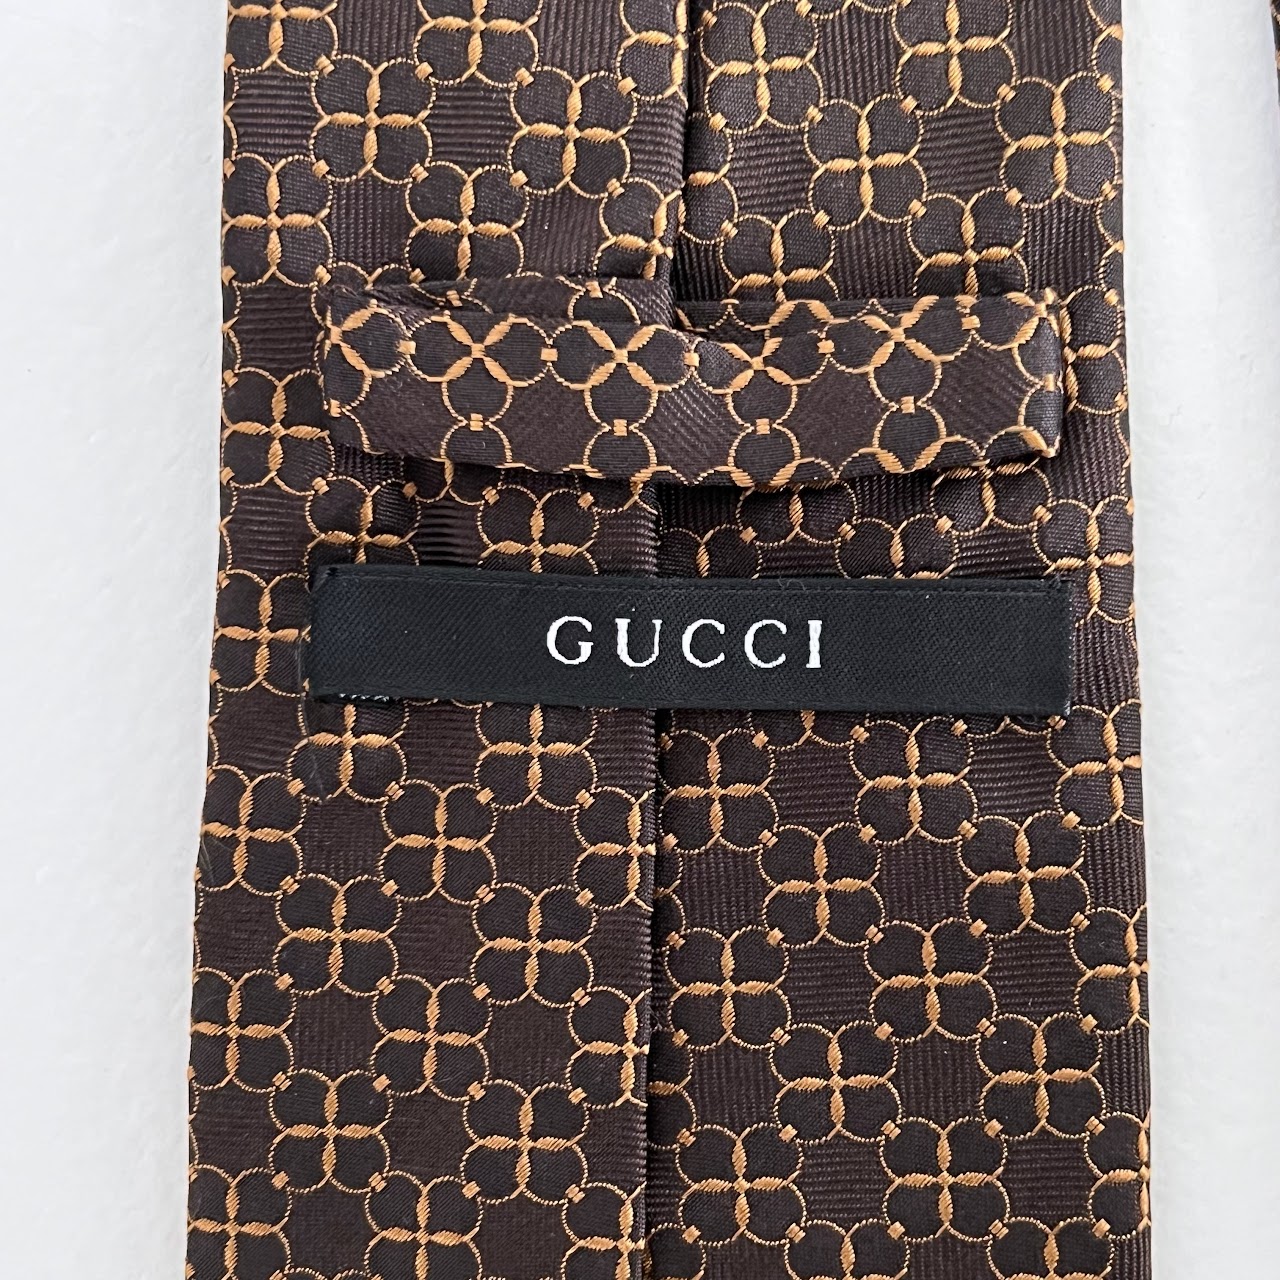 Gucci Woven Silk Tie